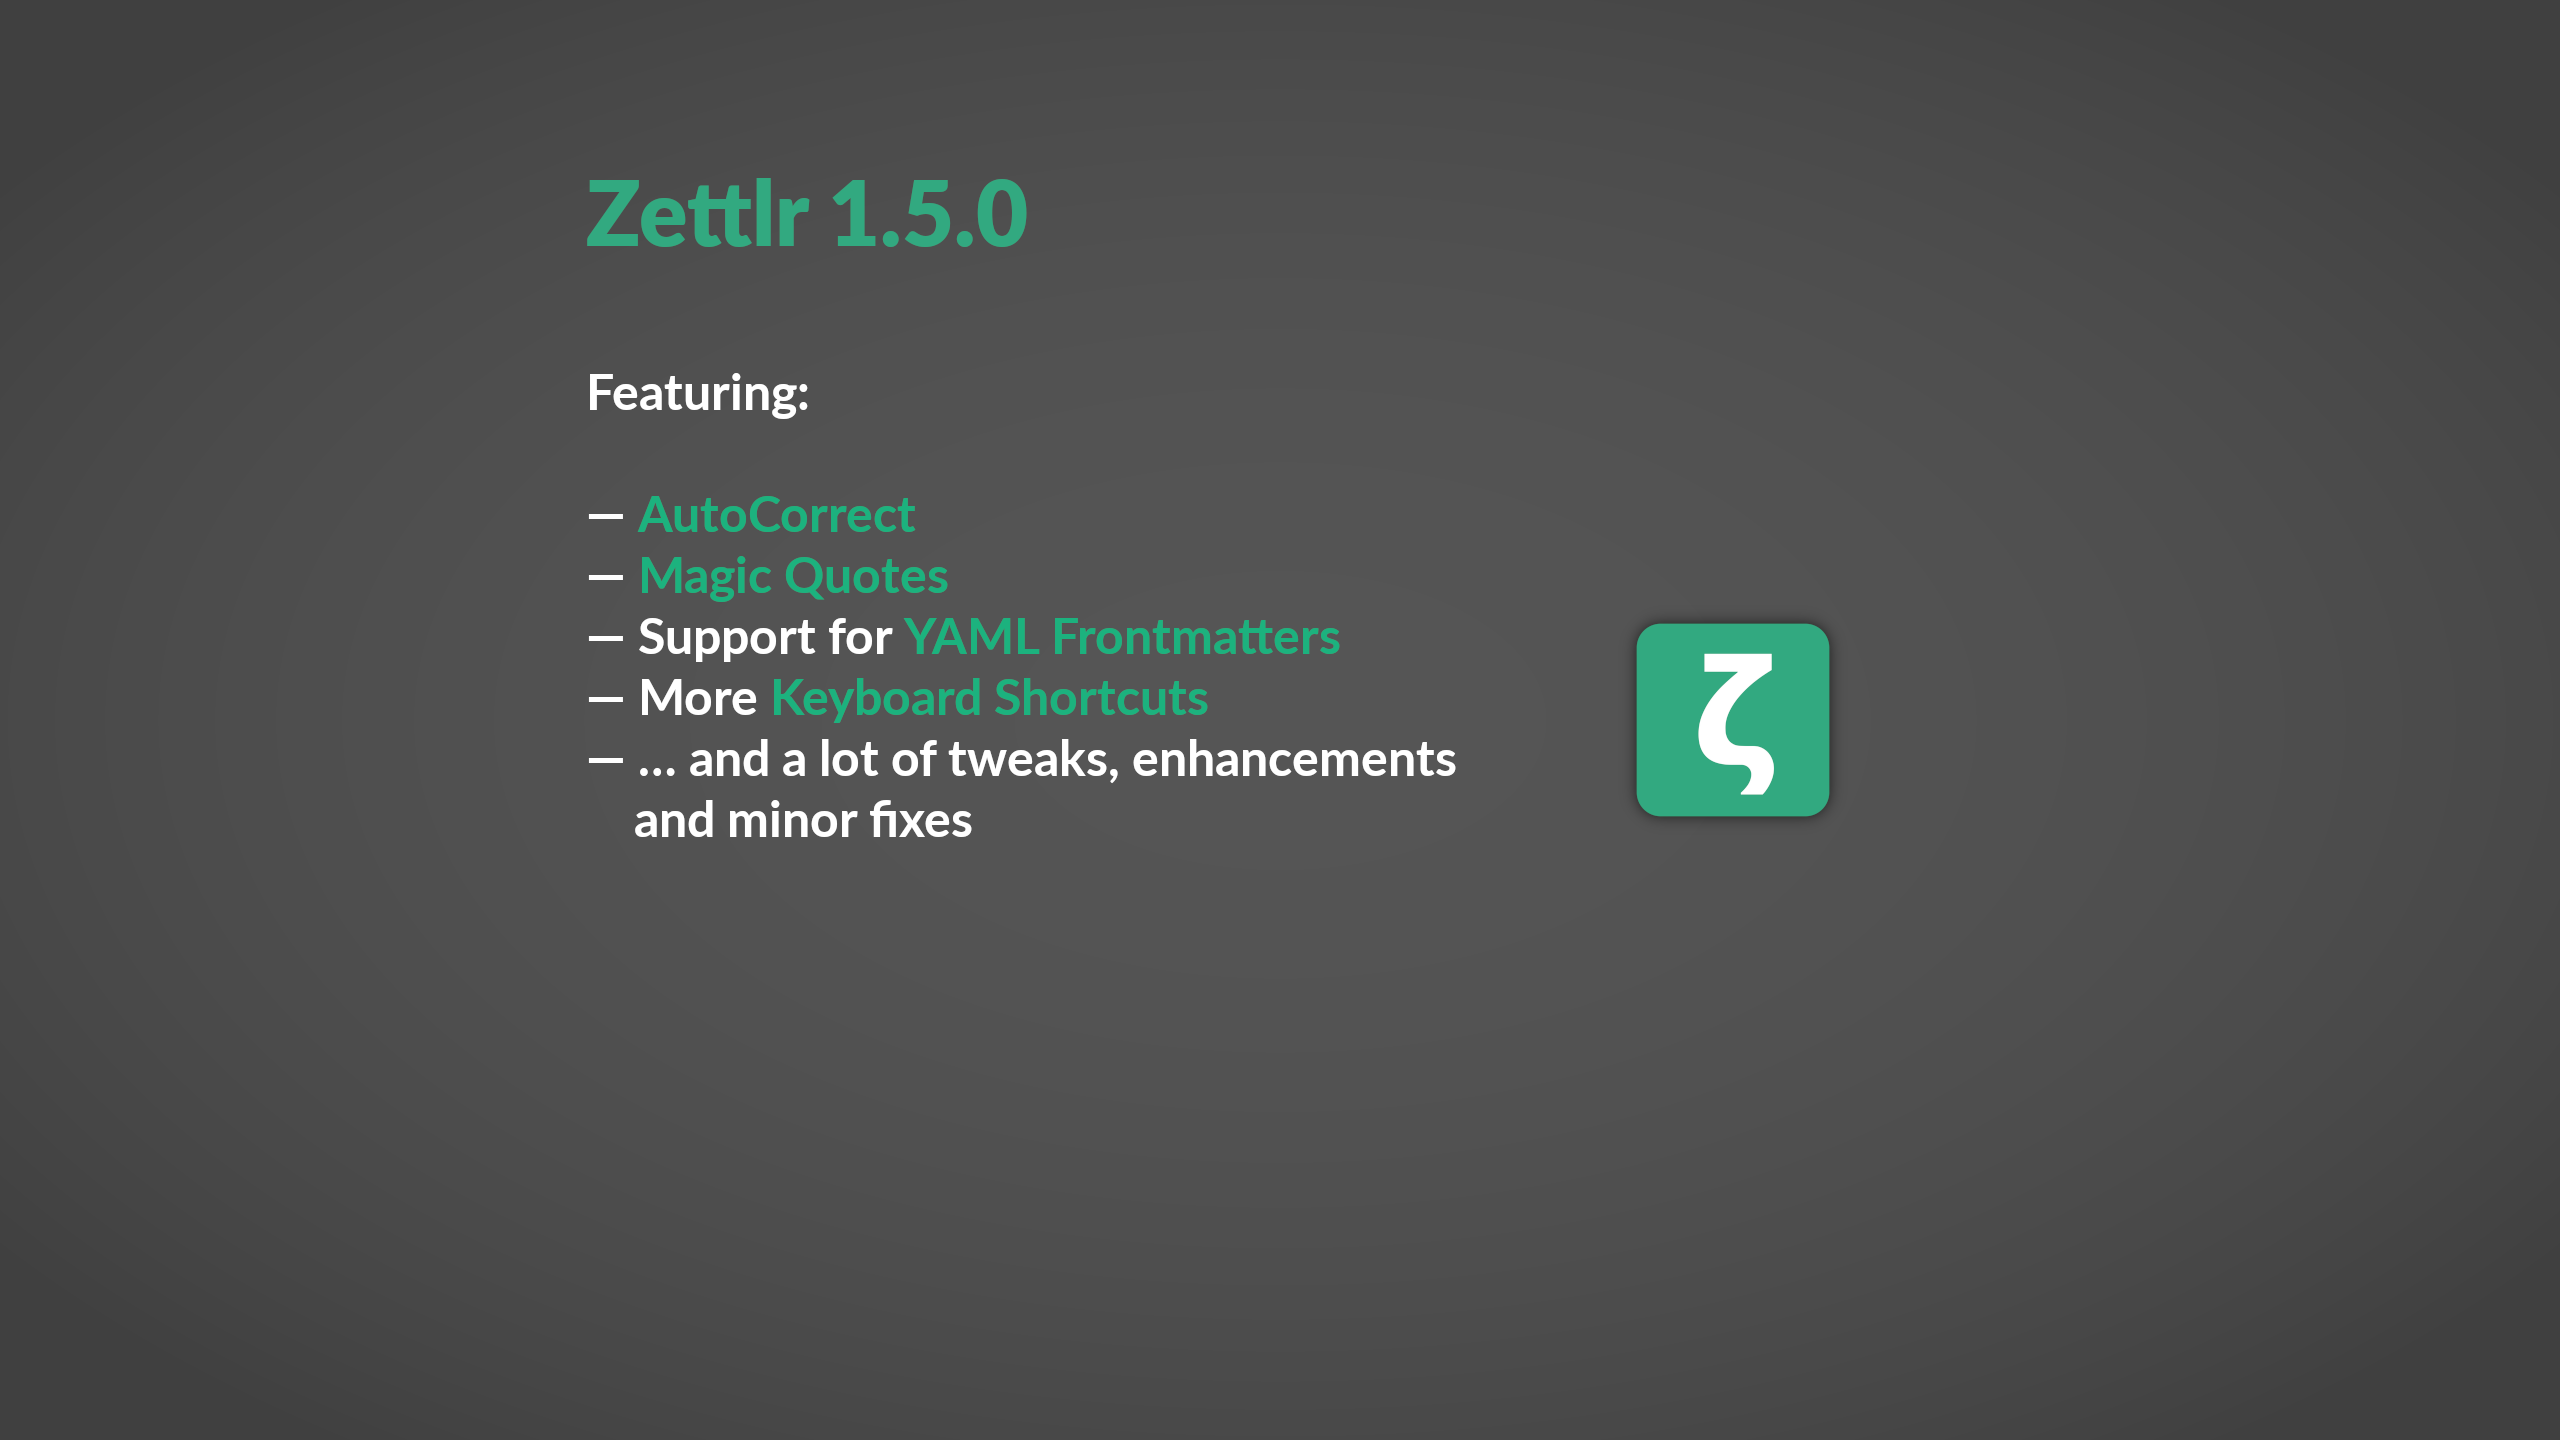 Zettlr 1.5.0 released